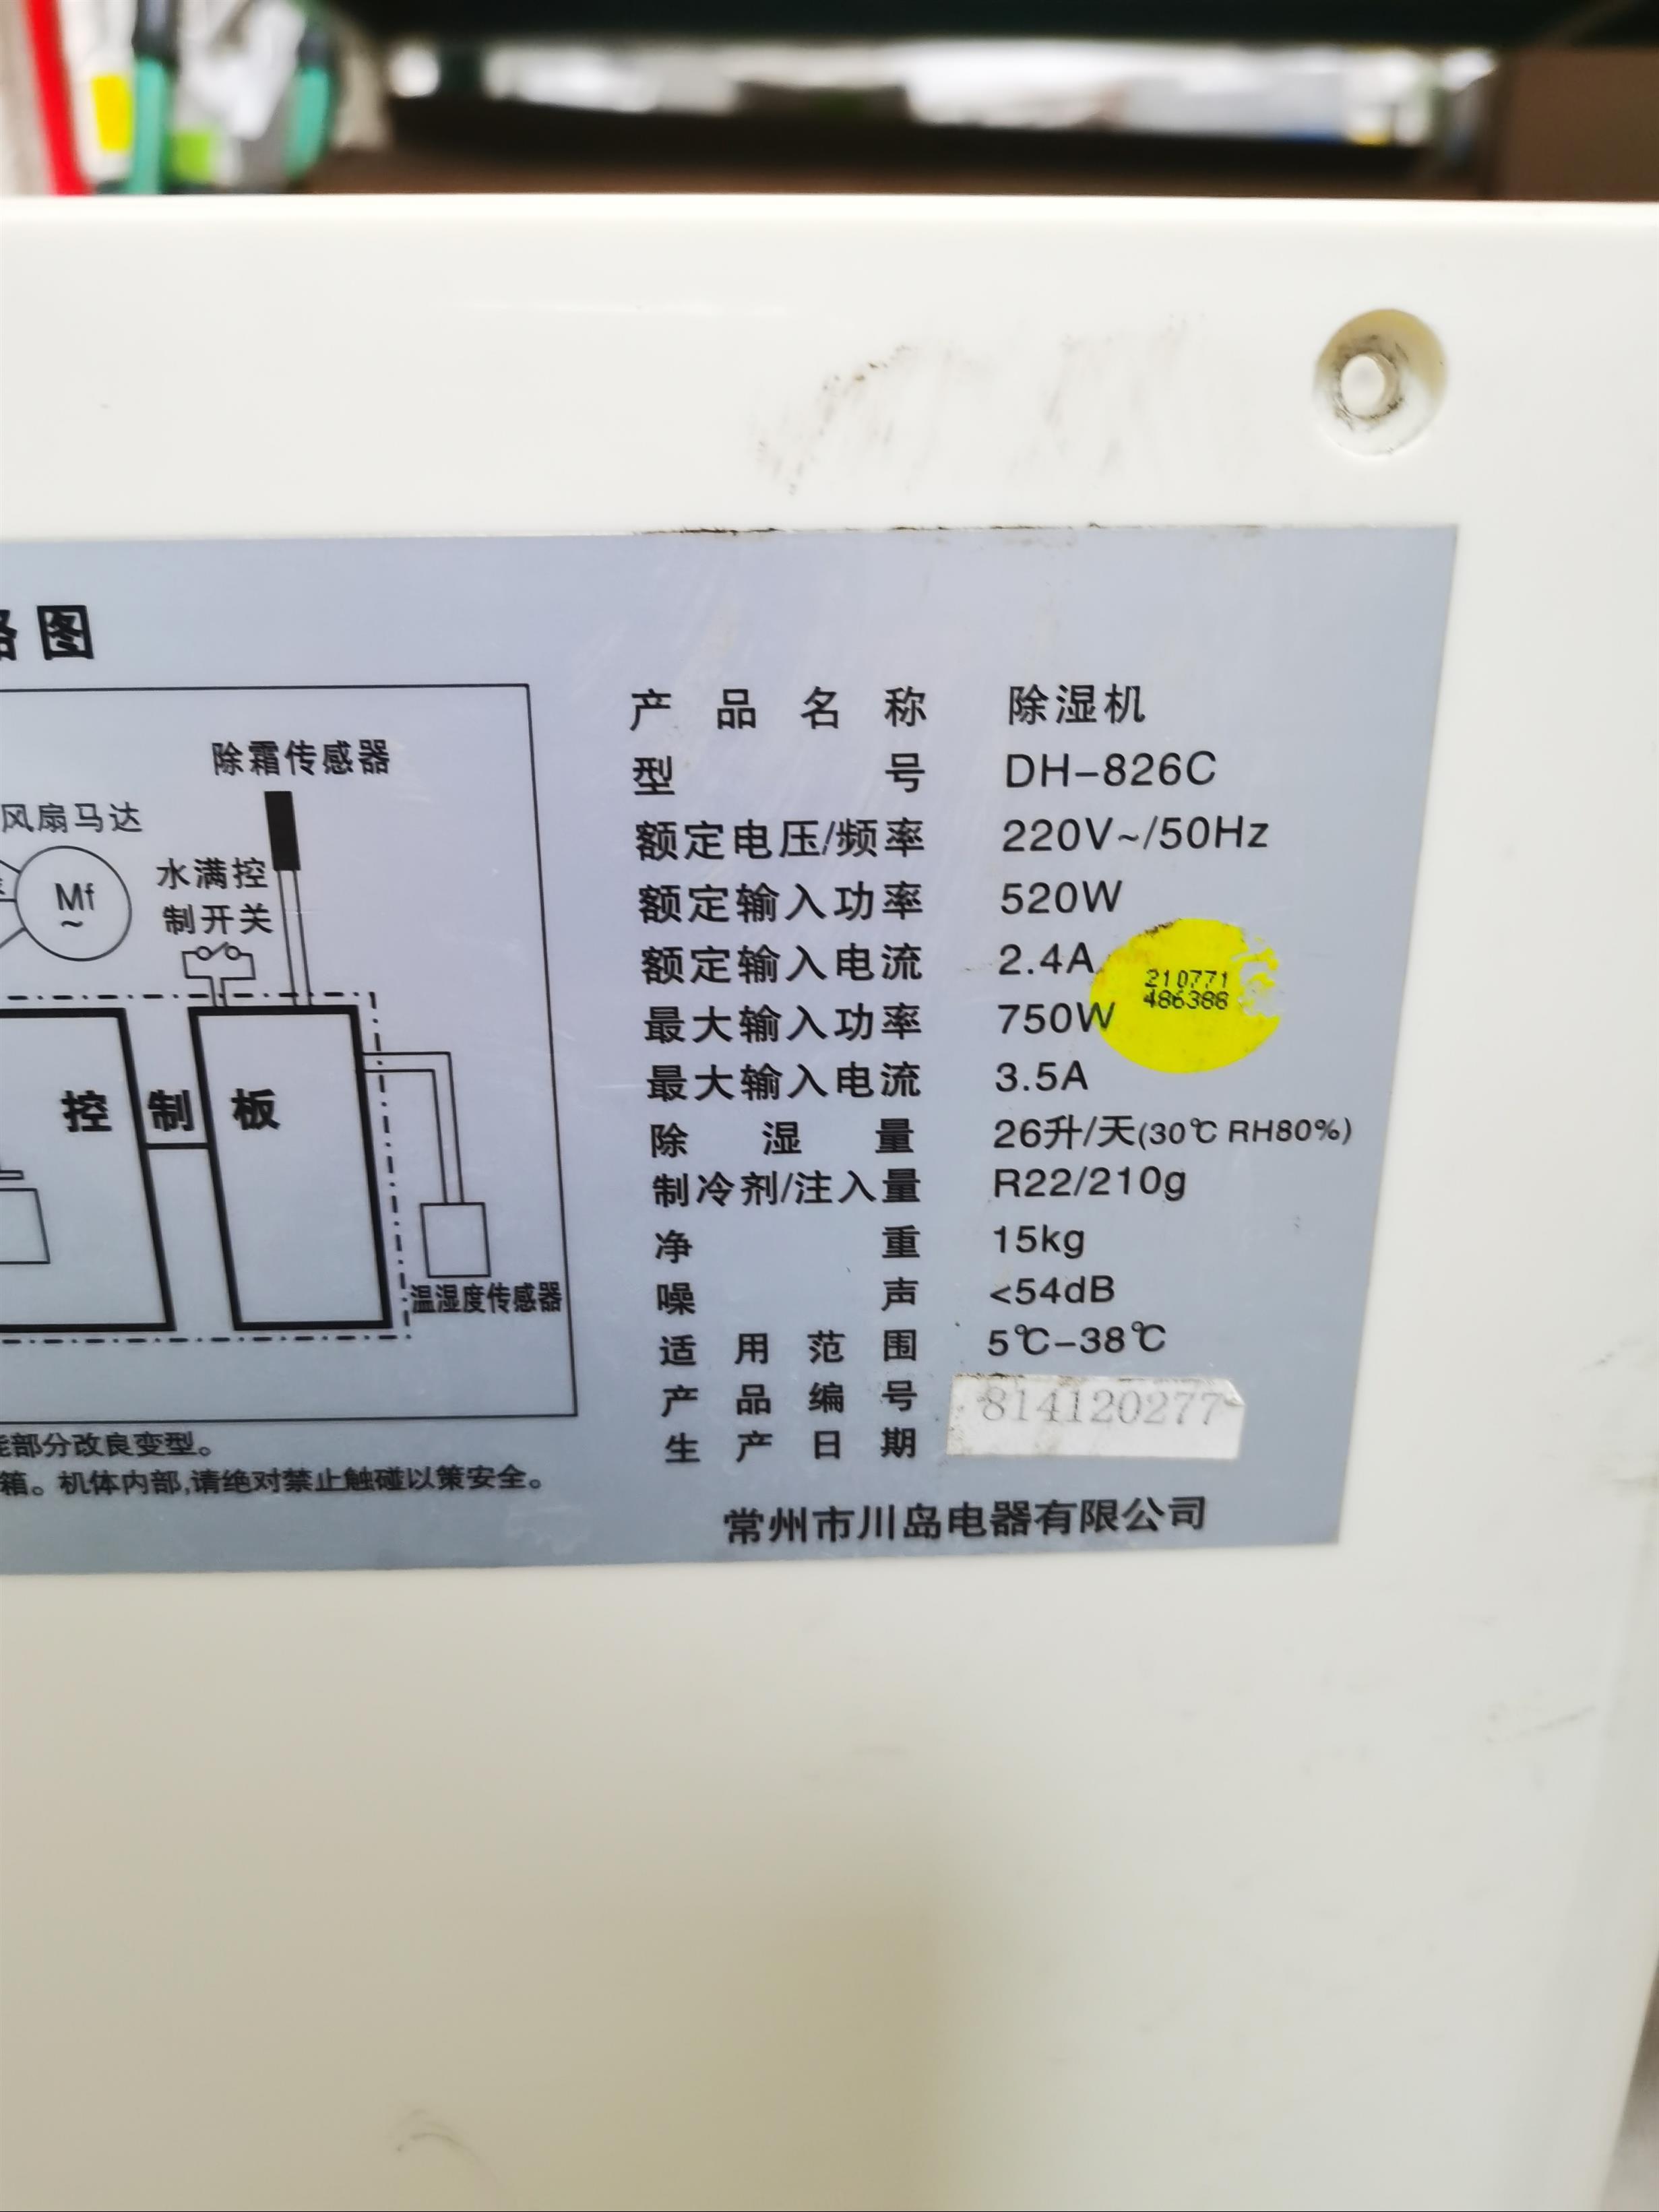 黄江冰箱维修 东莞市林诚机电制冷设备维修服务有限公司